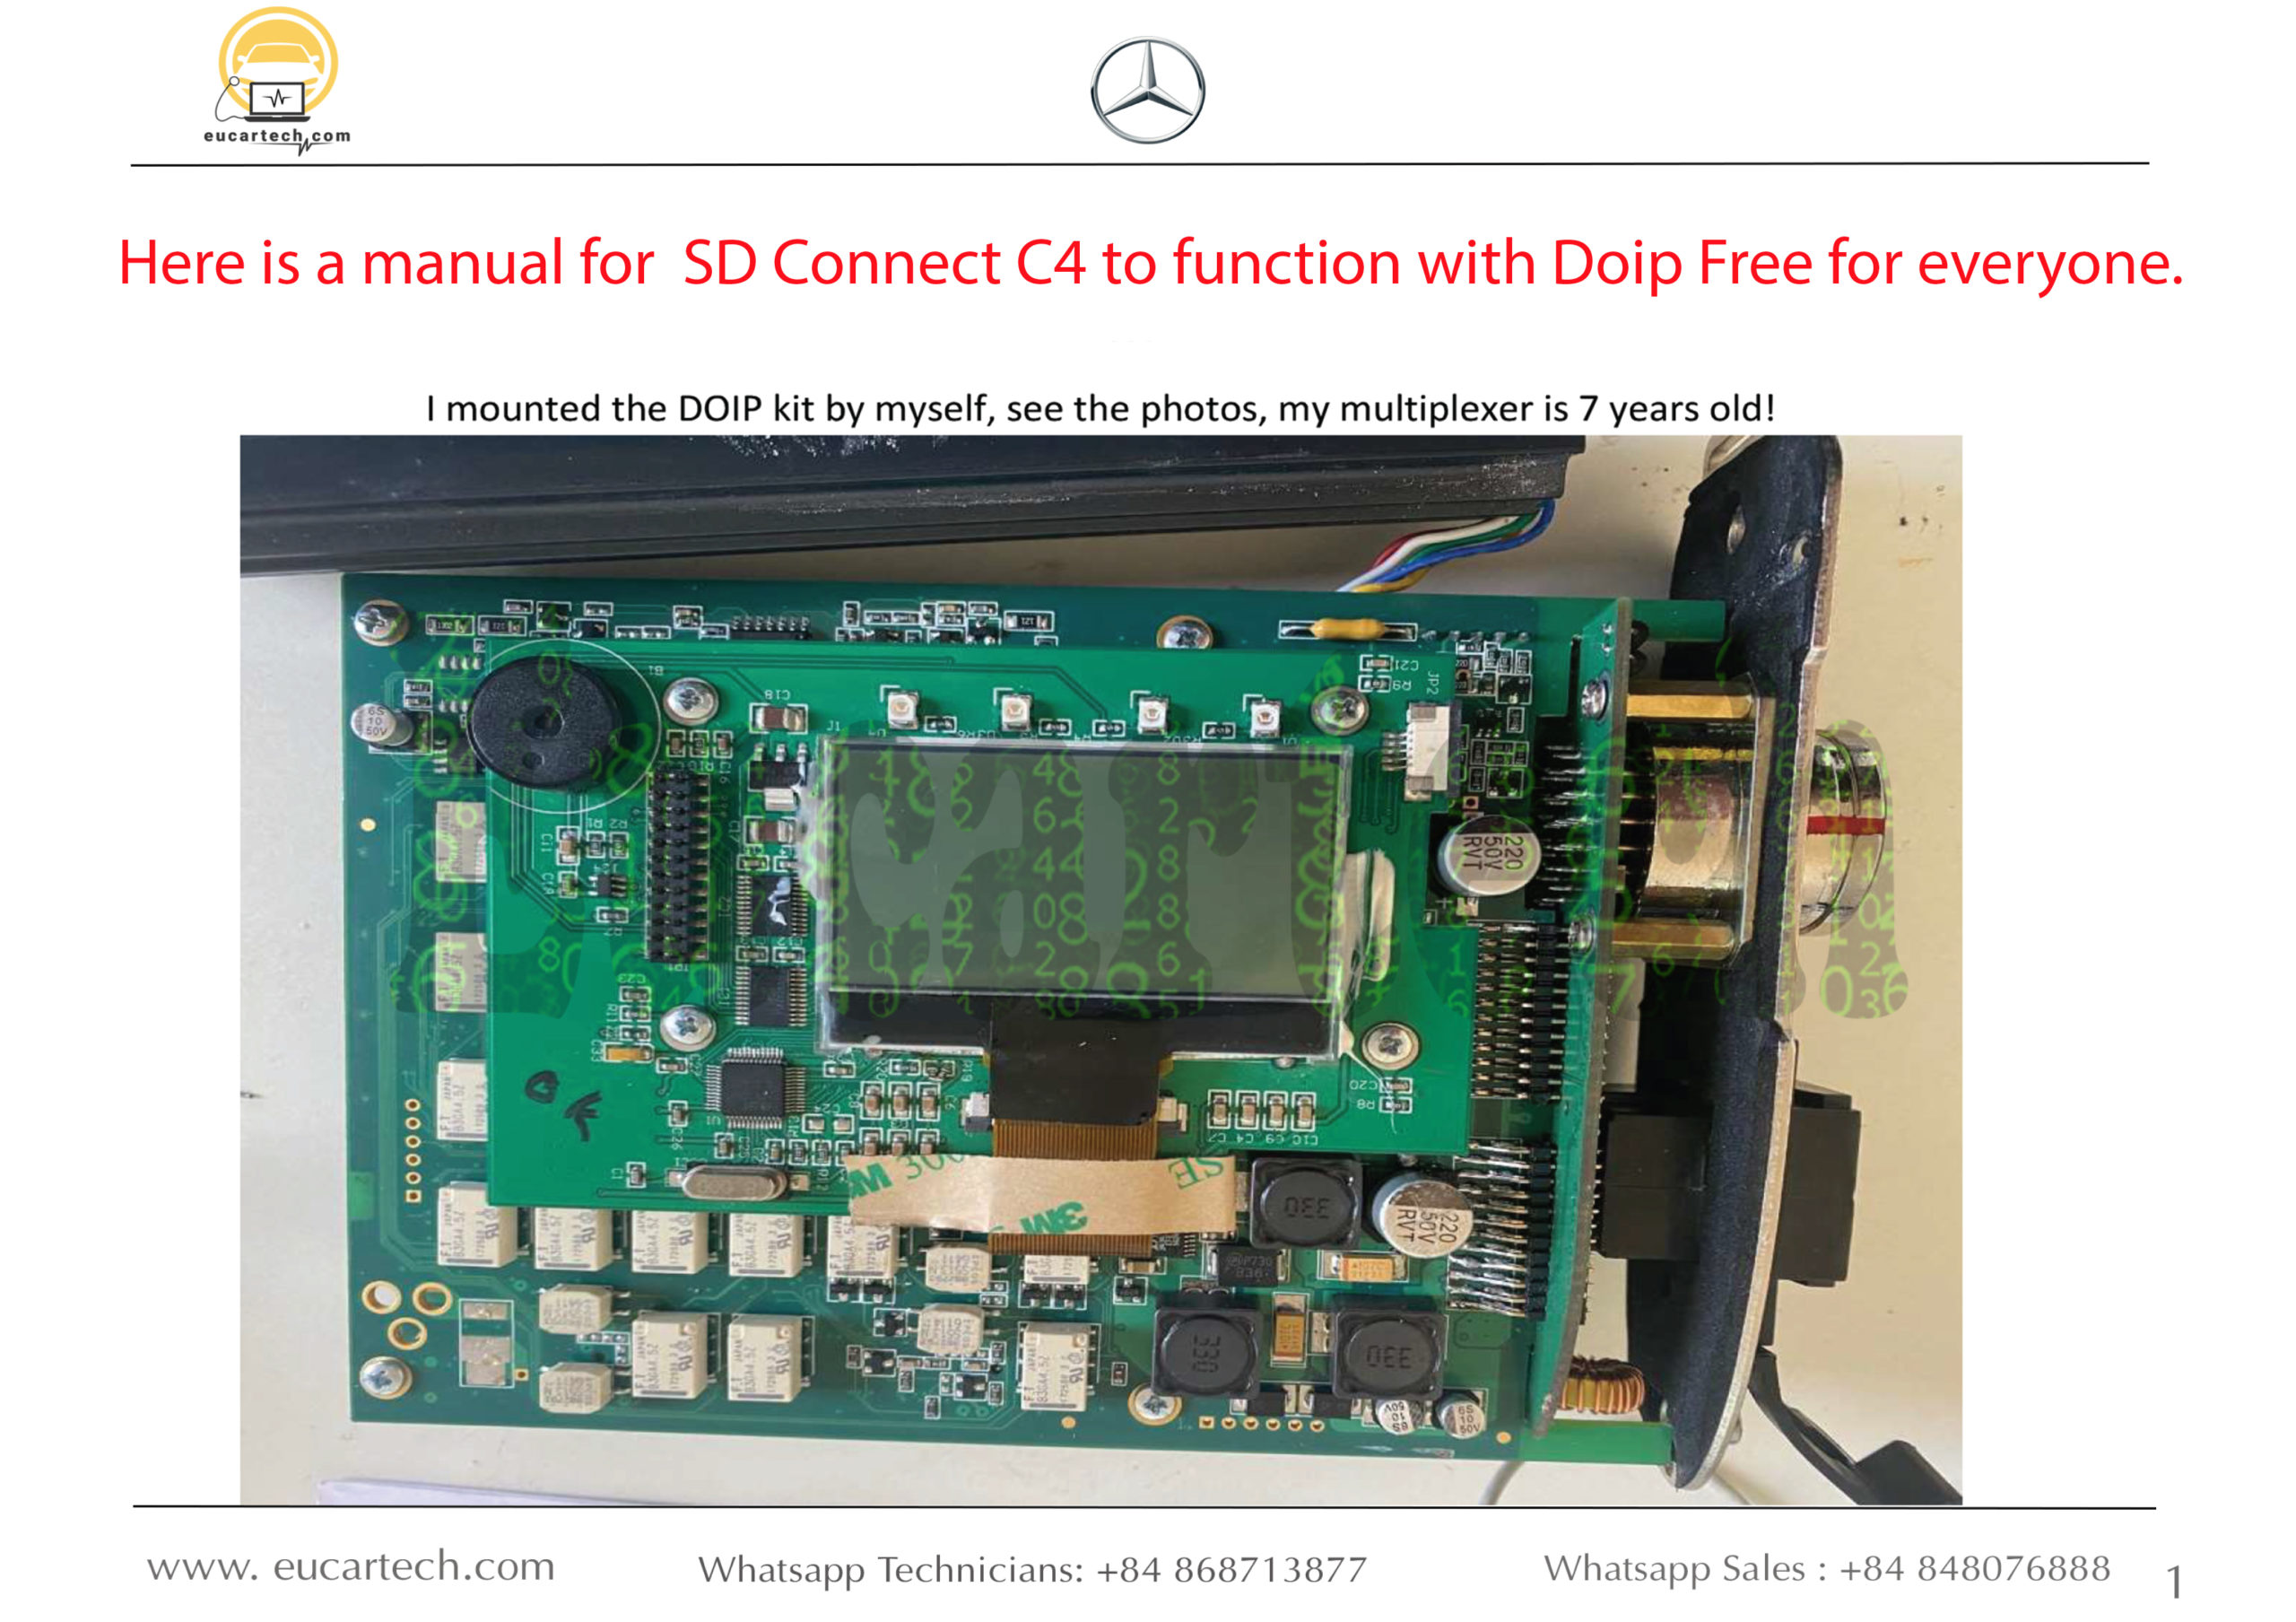 Hướng dẫn sử dụng SD Connect C4 để hoạt động với Doip Free cho mọi người.